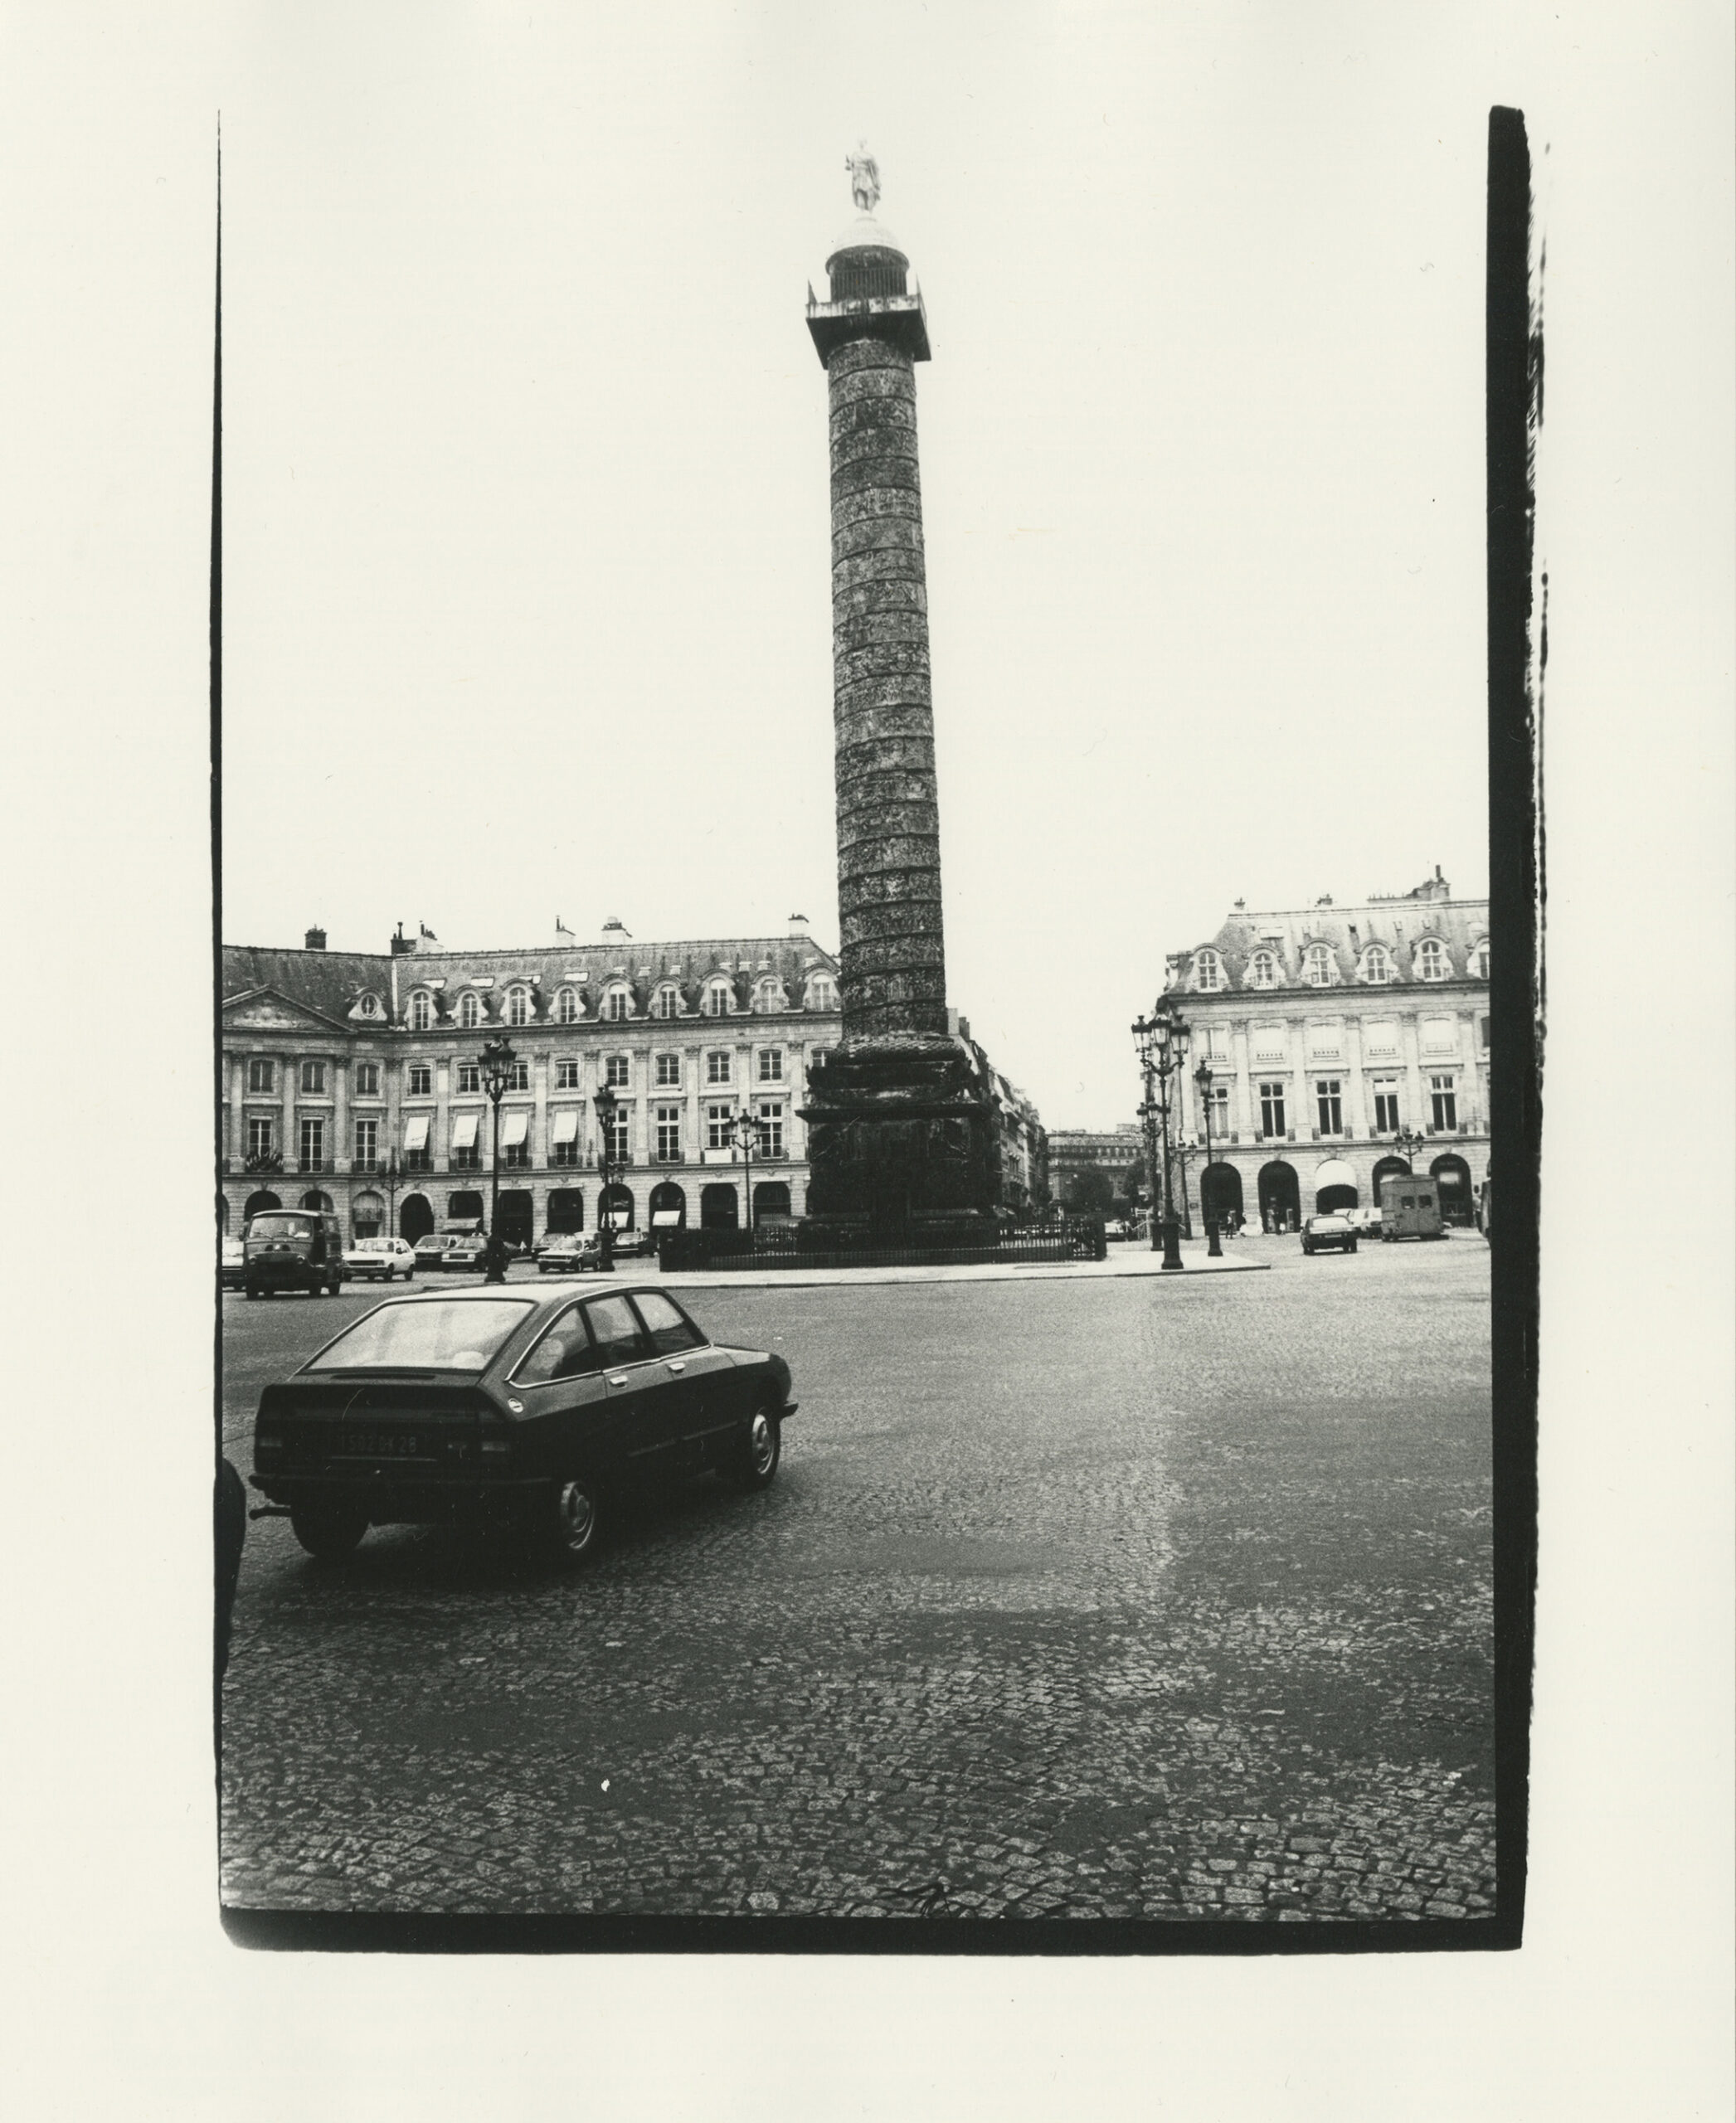 ANDY WARHOL
Place Vendôme, Paris, c. 1981